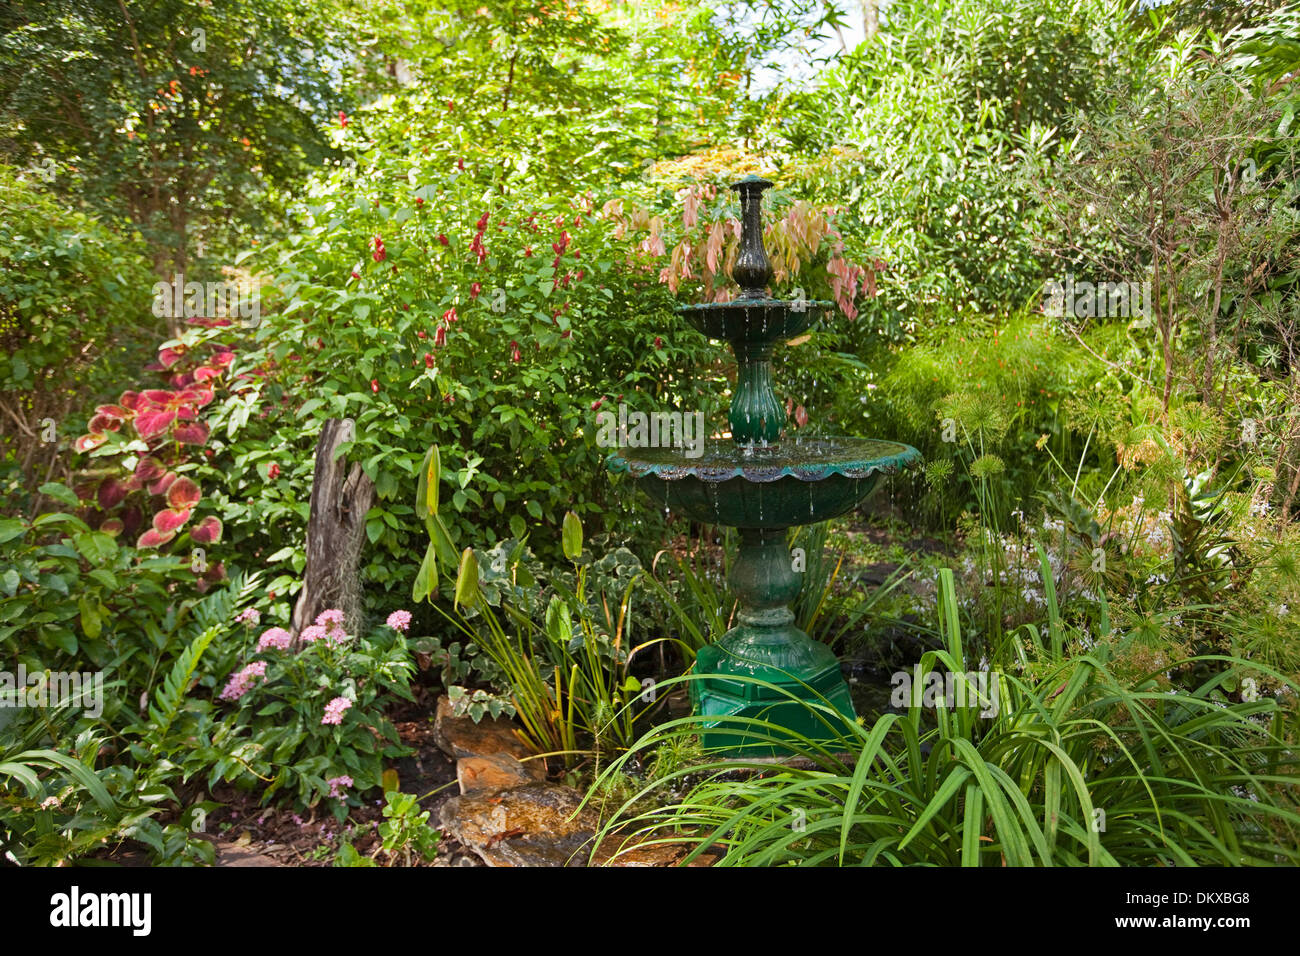 Un spectaculaire jardin sub-tropical avec une fontaine décorative fontaine, feuillage émeraude, arbustes et vivaces Banque D'Images